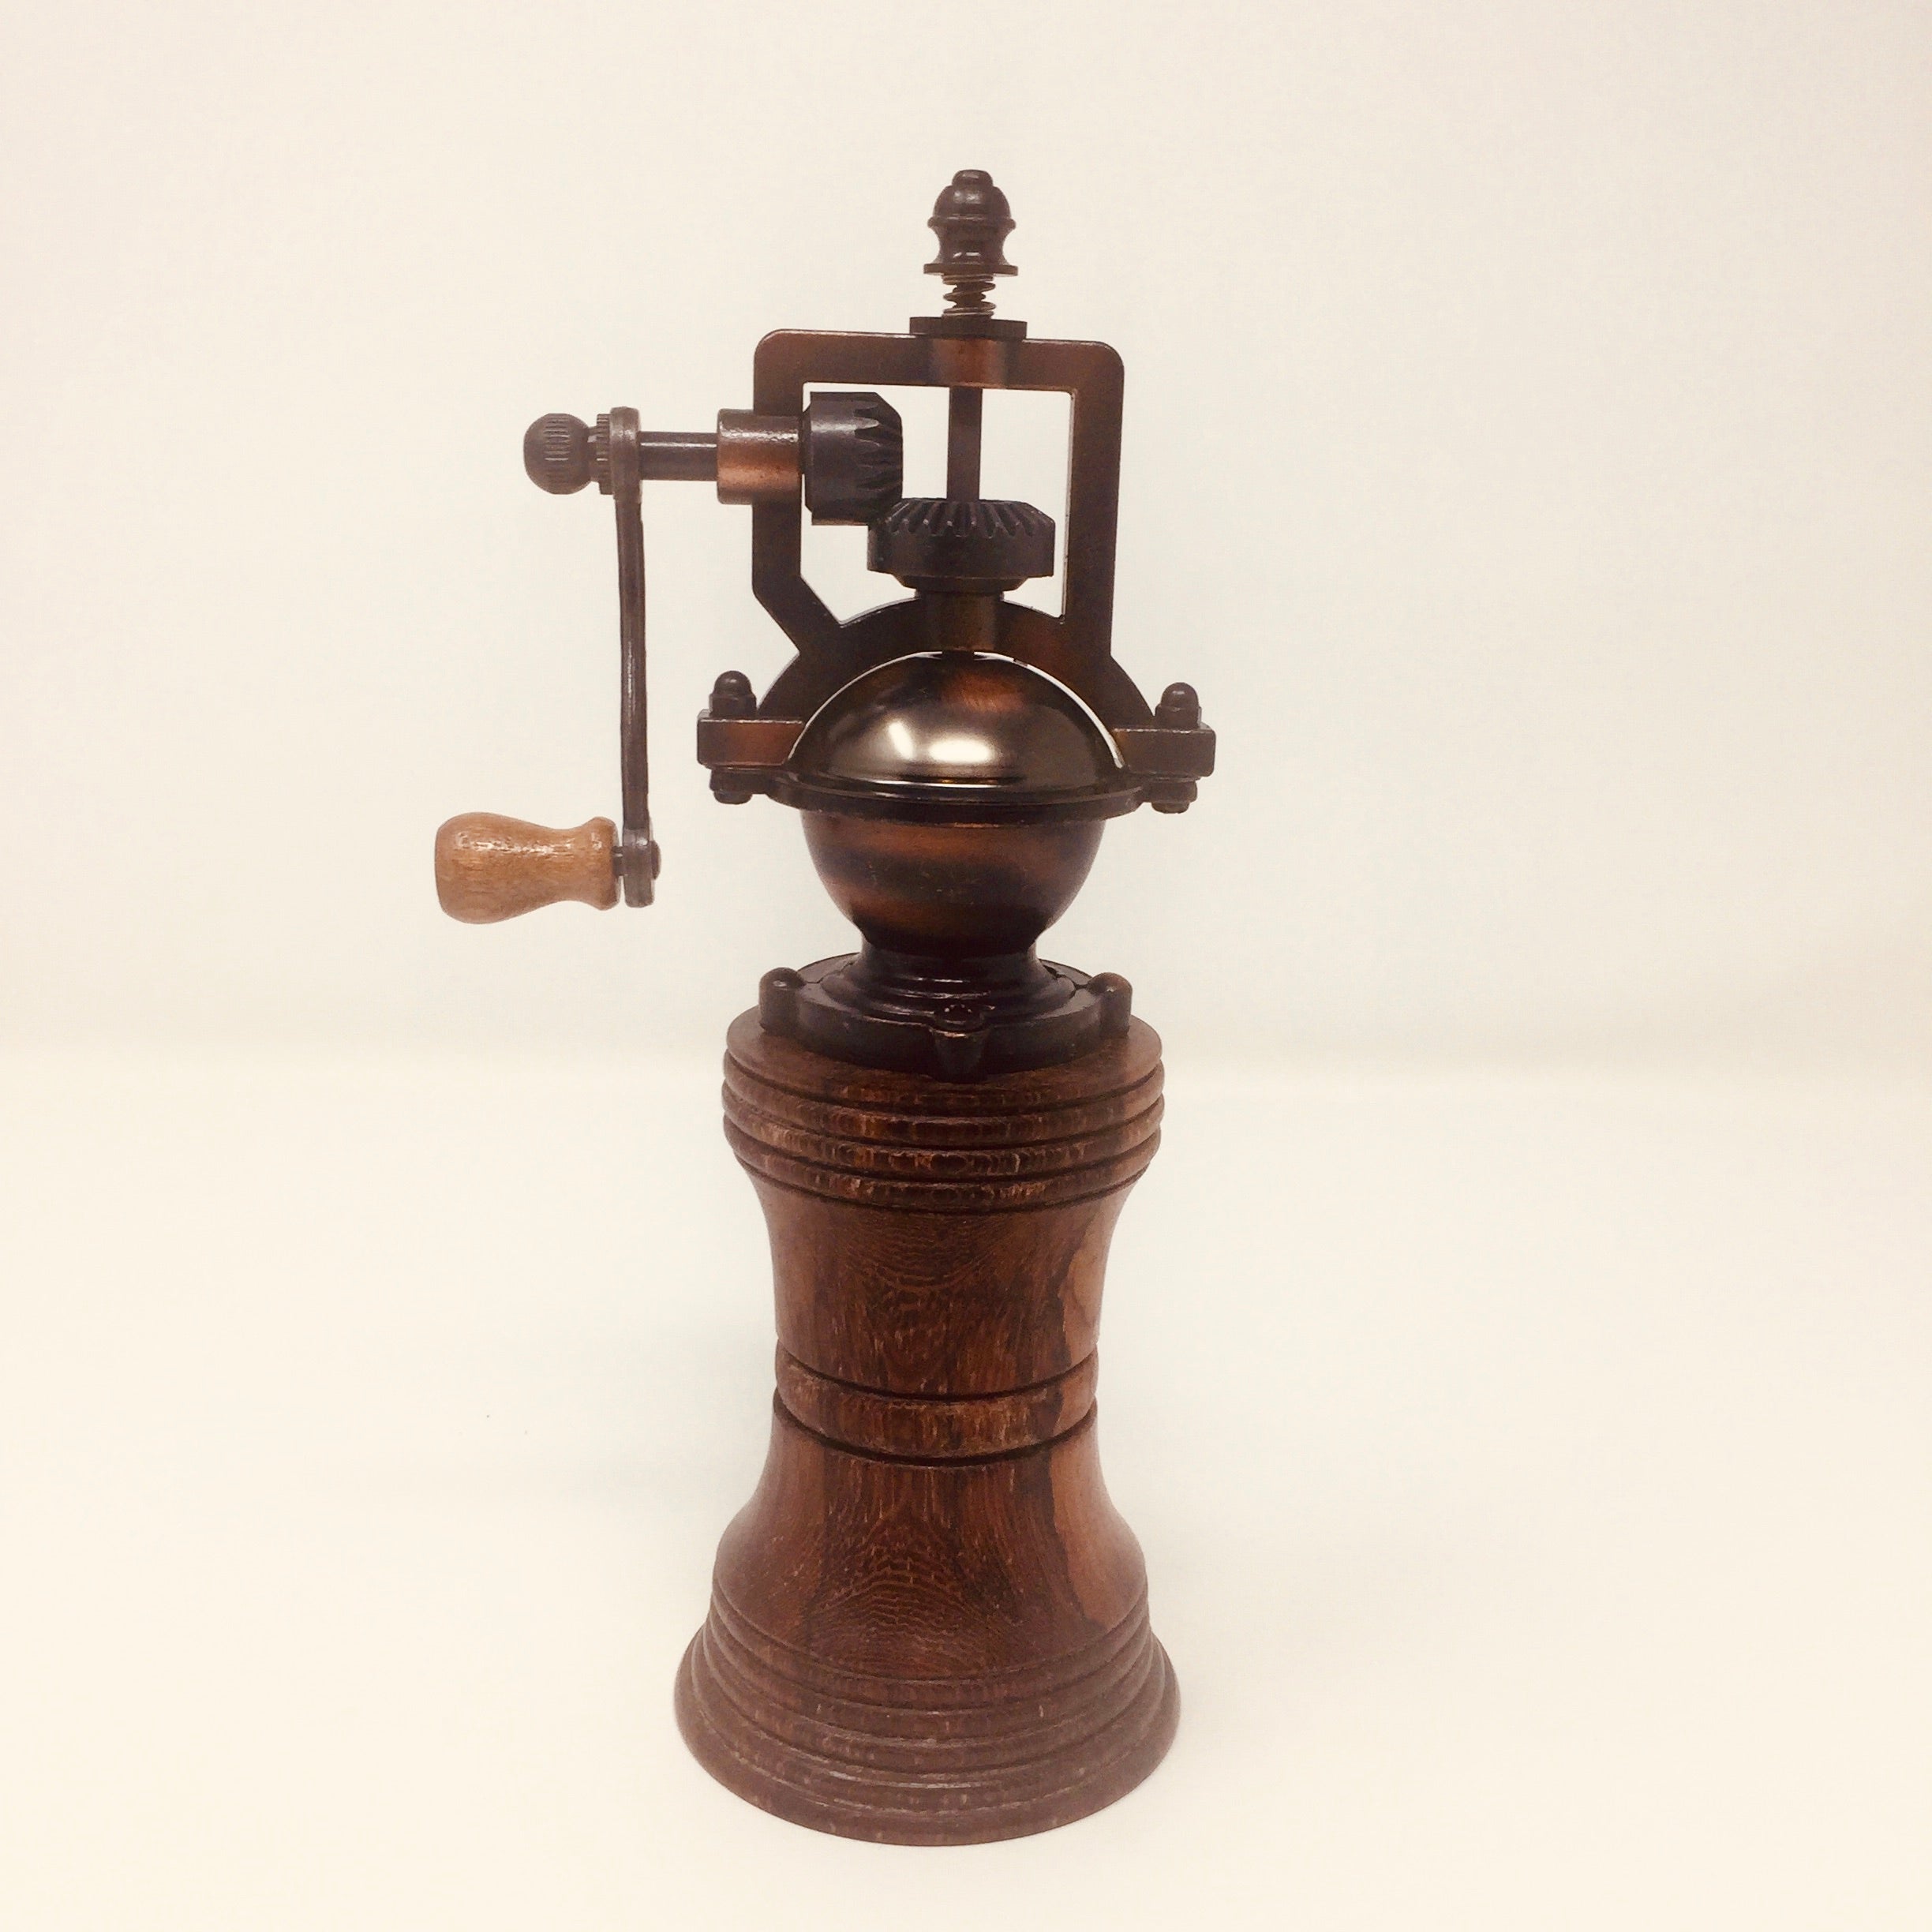 Antique style burnished copper pepper grinder